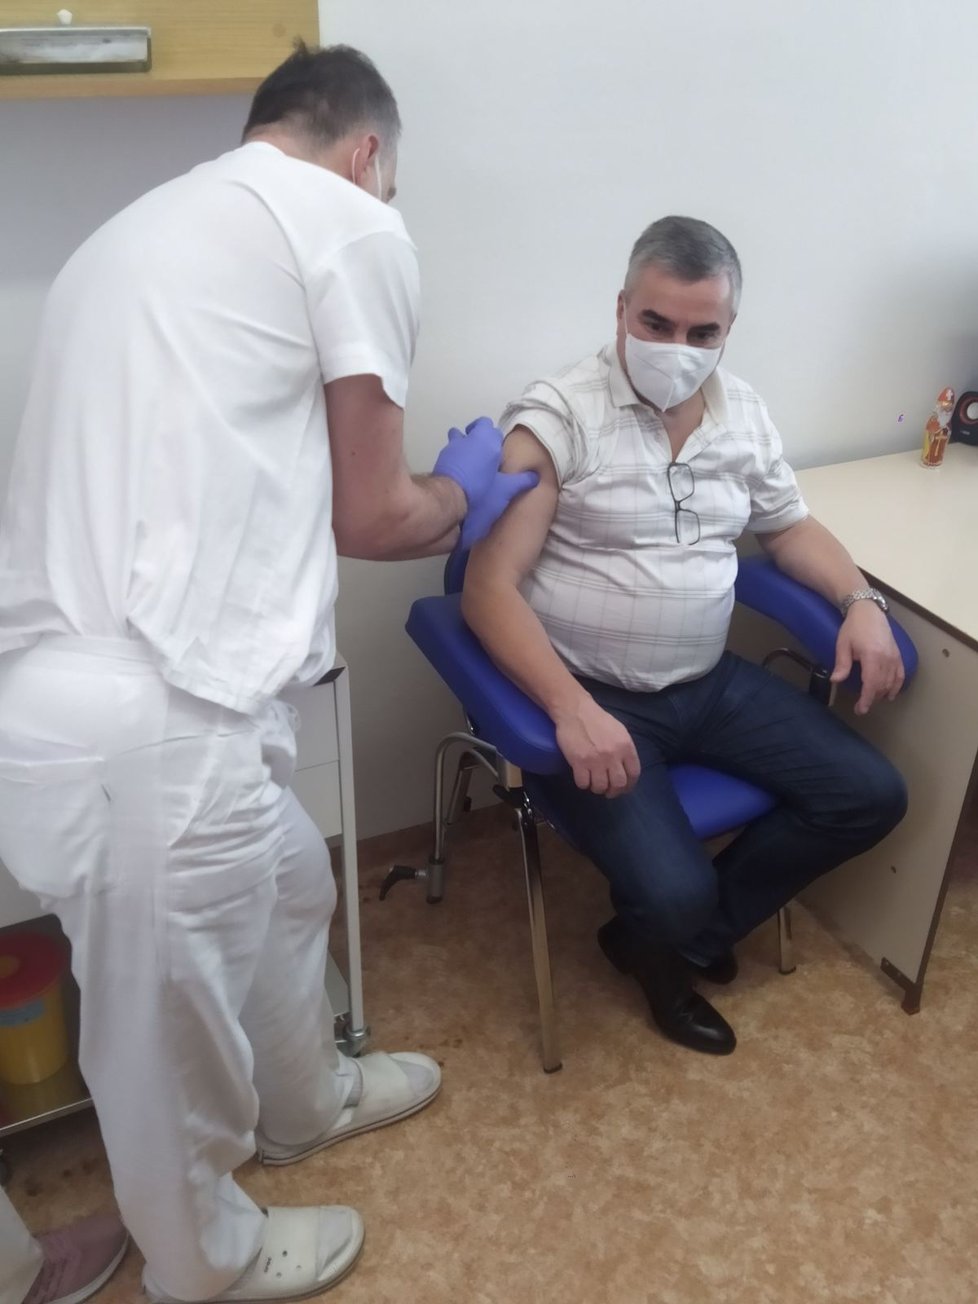 Ve Fakultní nemocnici Brno zahájili očkování proti covidu: Ředitel nemocnice Jaroslav Štěrba (27.12.2020)